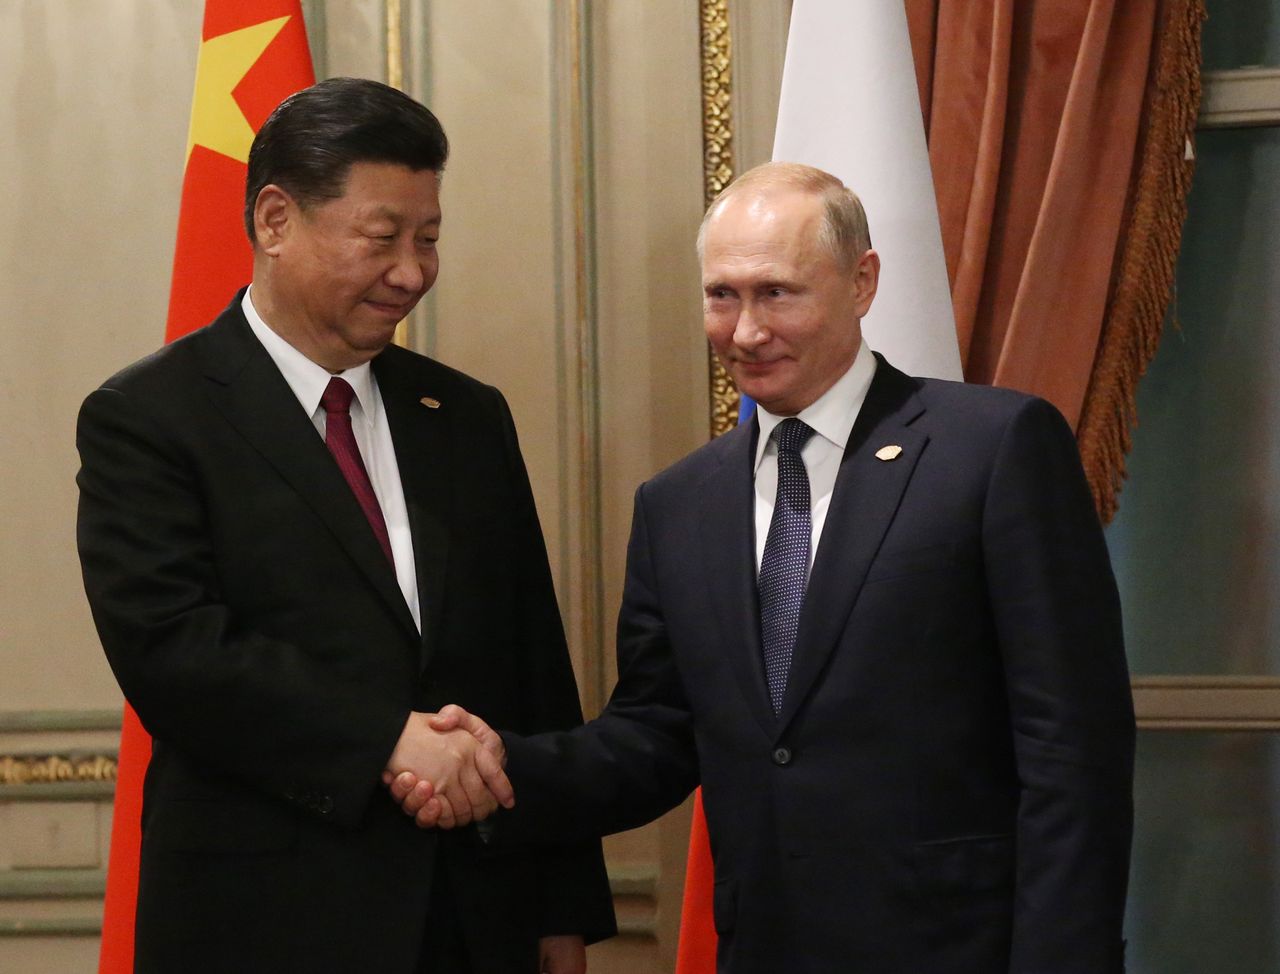 Vladimir Putin and President Xi Jinping